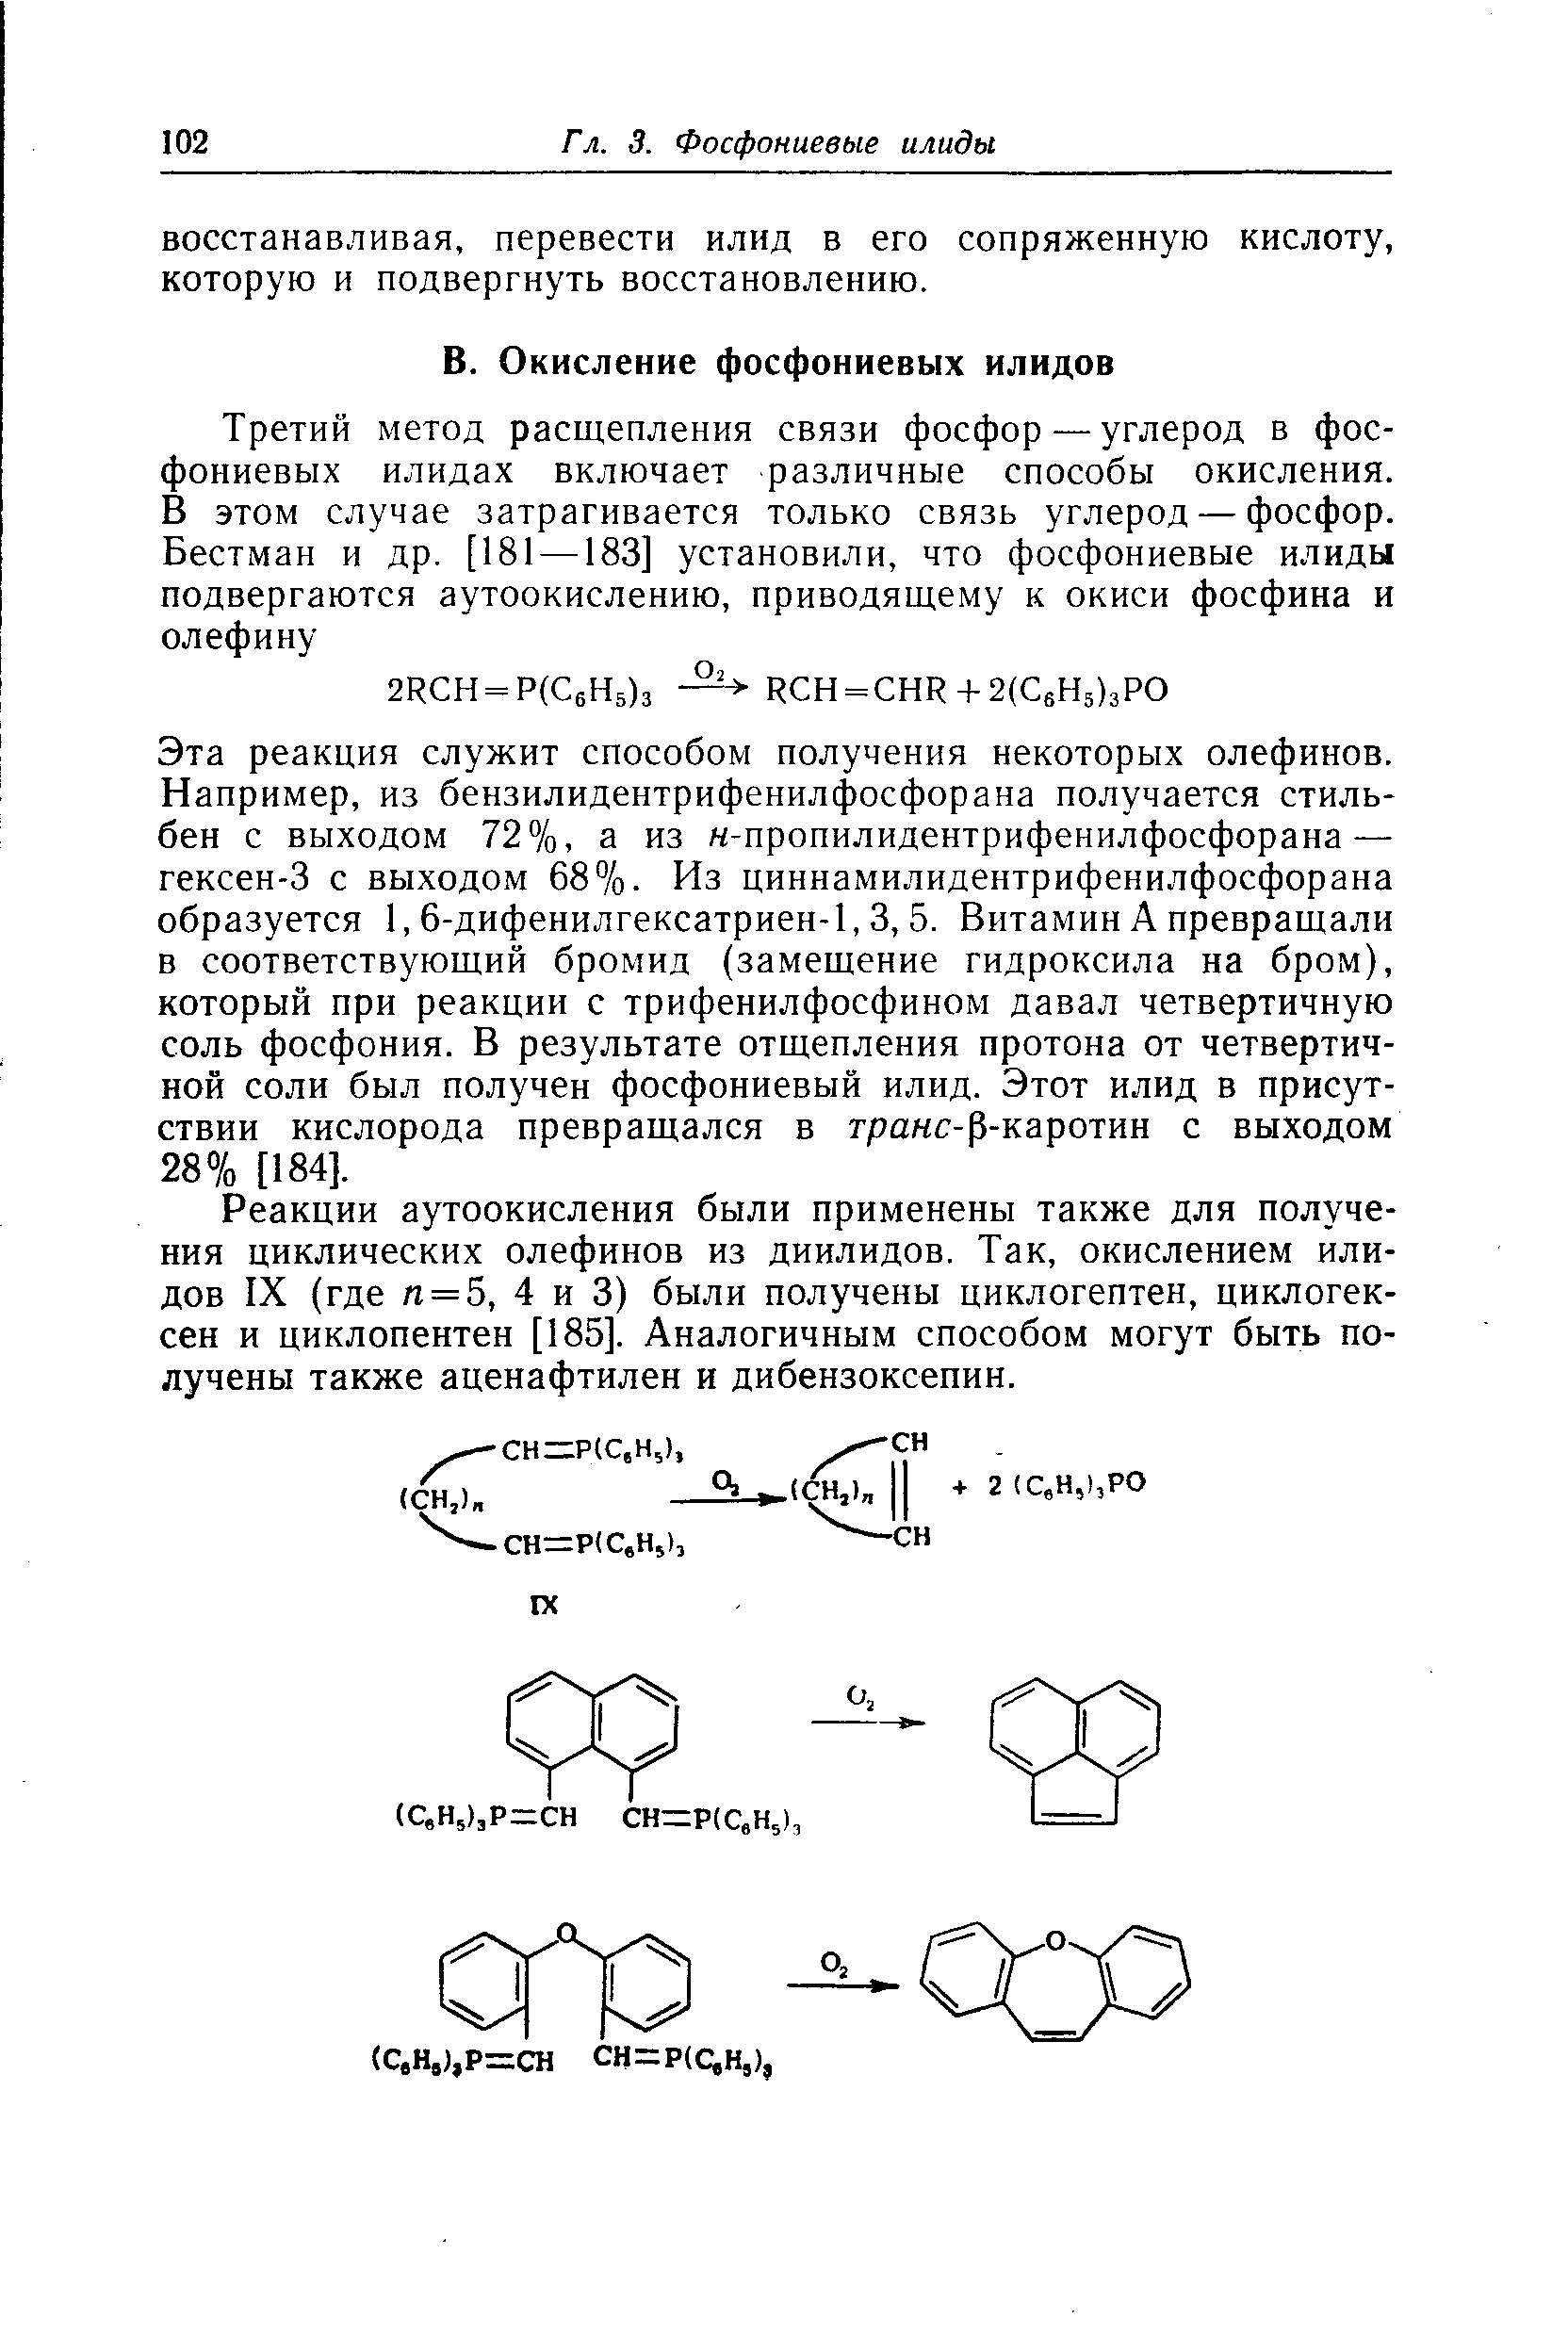 Реакции аутоокисления были применены также для получения циклических олефинов из диилидов. Так, окислением илидов IX (где л = 5, 4 и 3) были получены циклогептен, циклогексен и циклопентен [185]. Аналогичным способом могут быть получены также аценафтилен и дибензоксепин.